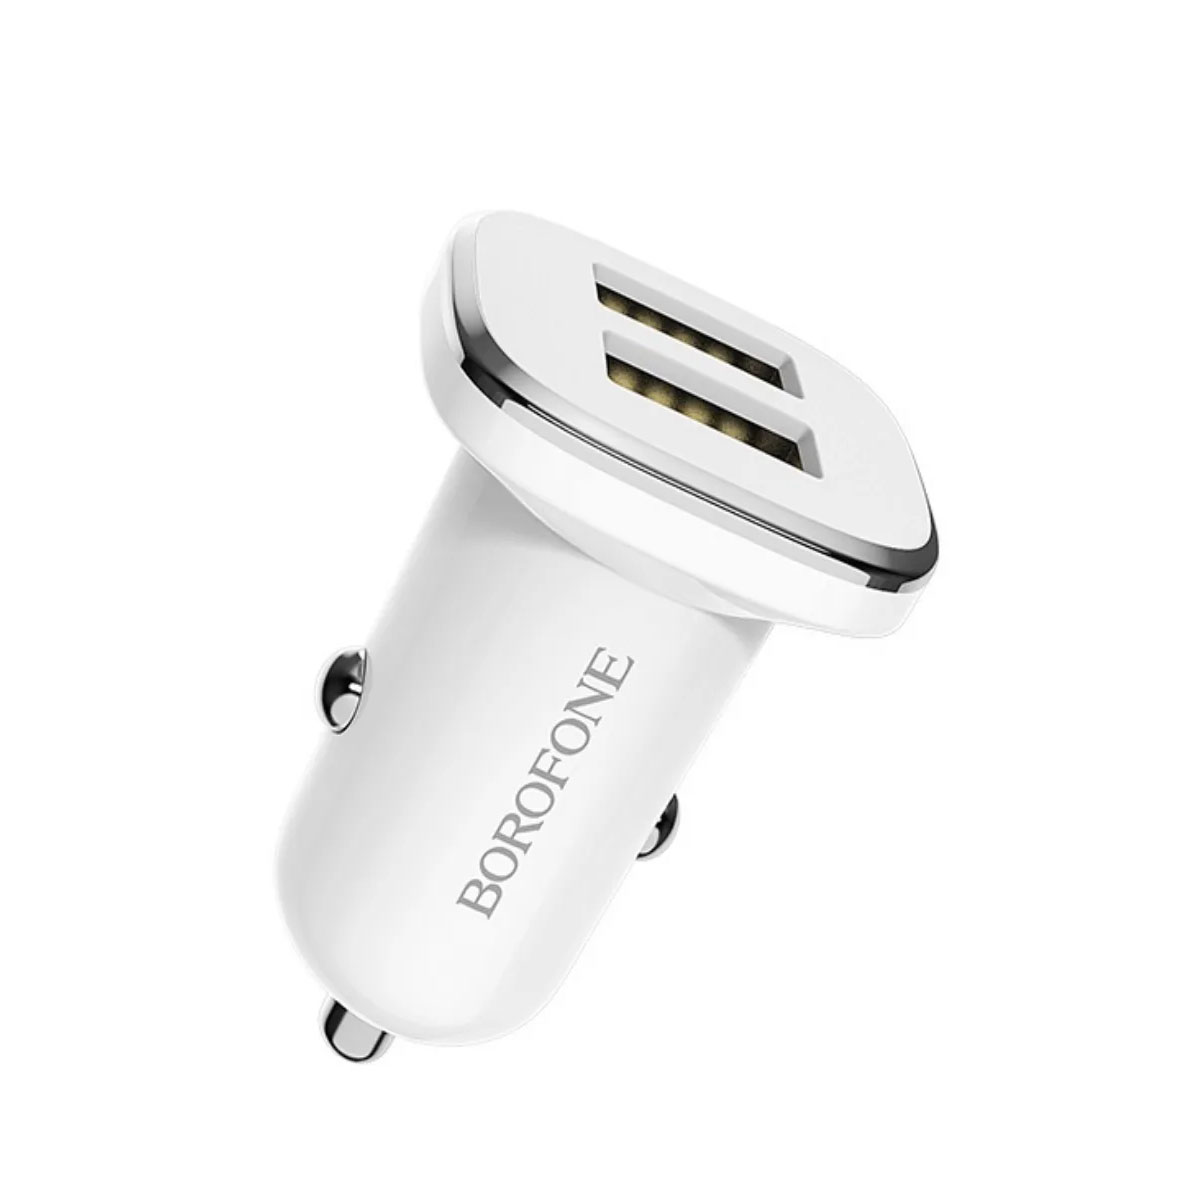 АЗУ (Автомобильное зарядное устройство) BOROFONE BZ12 Lasting power, 2 USB, 2.4A, цвет белый